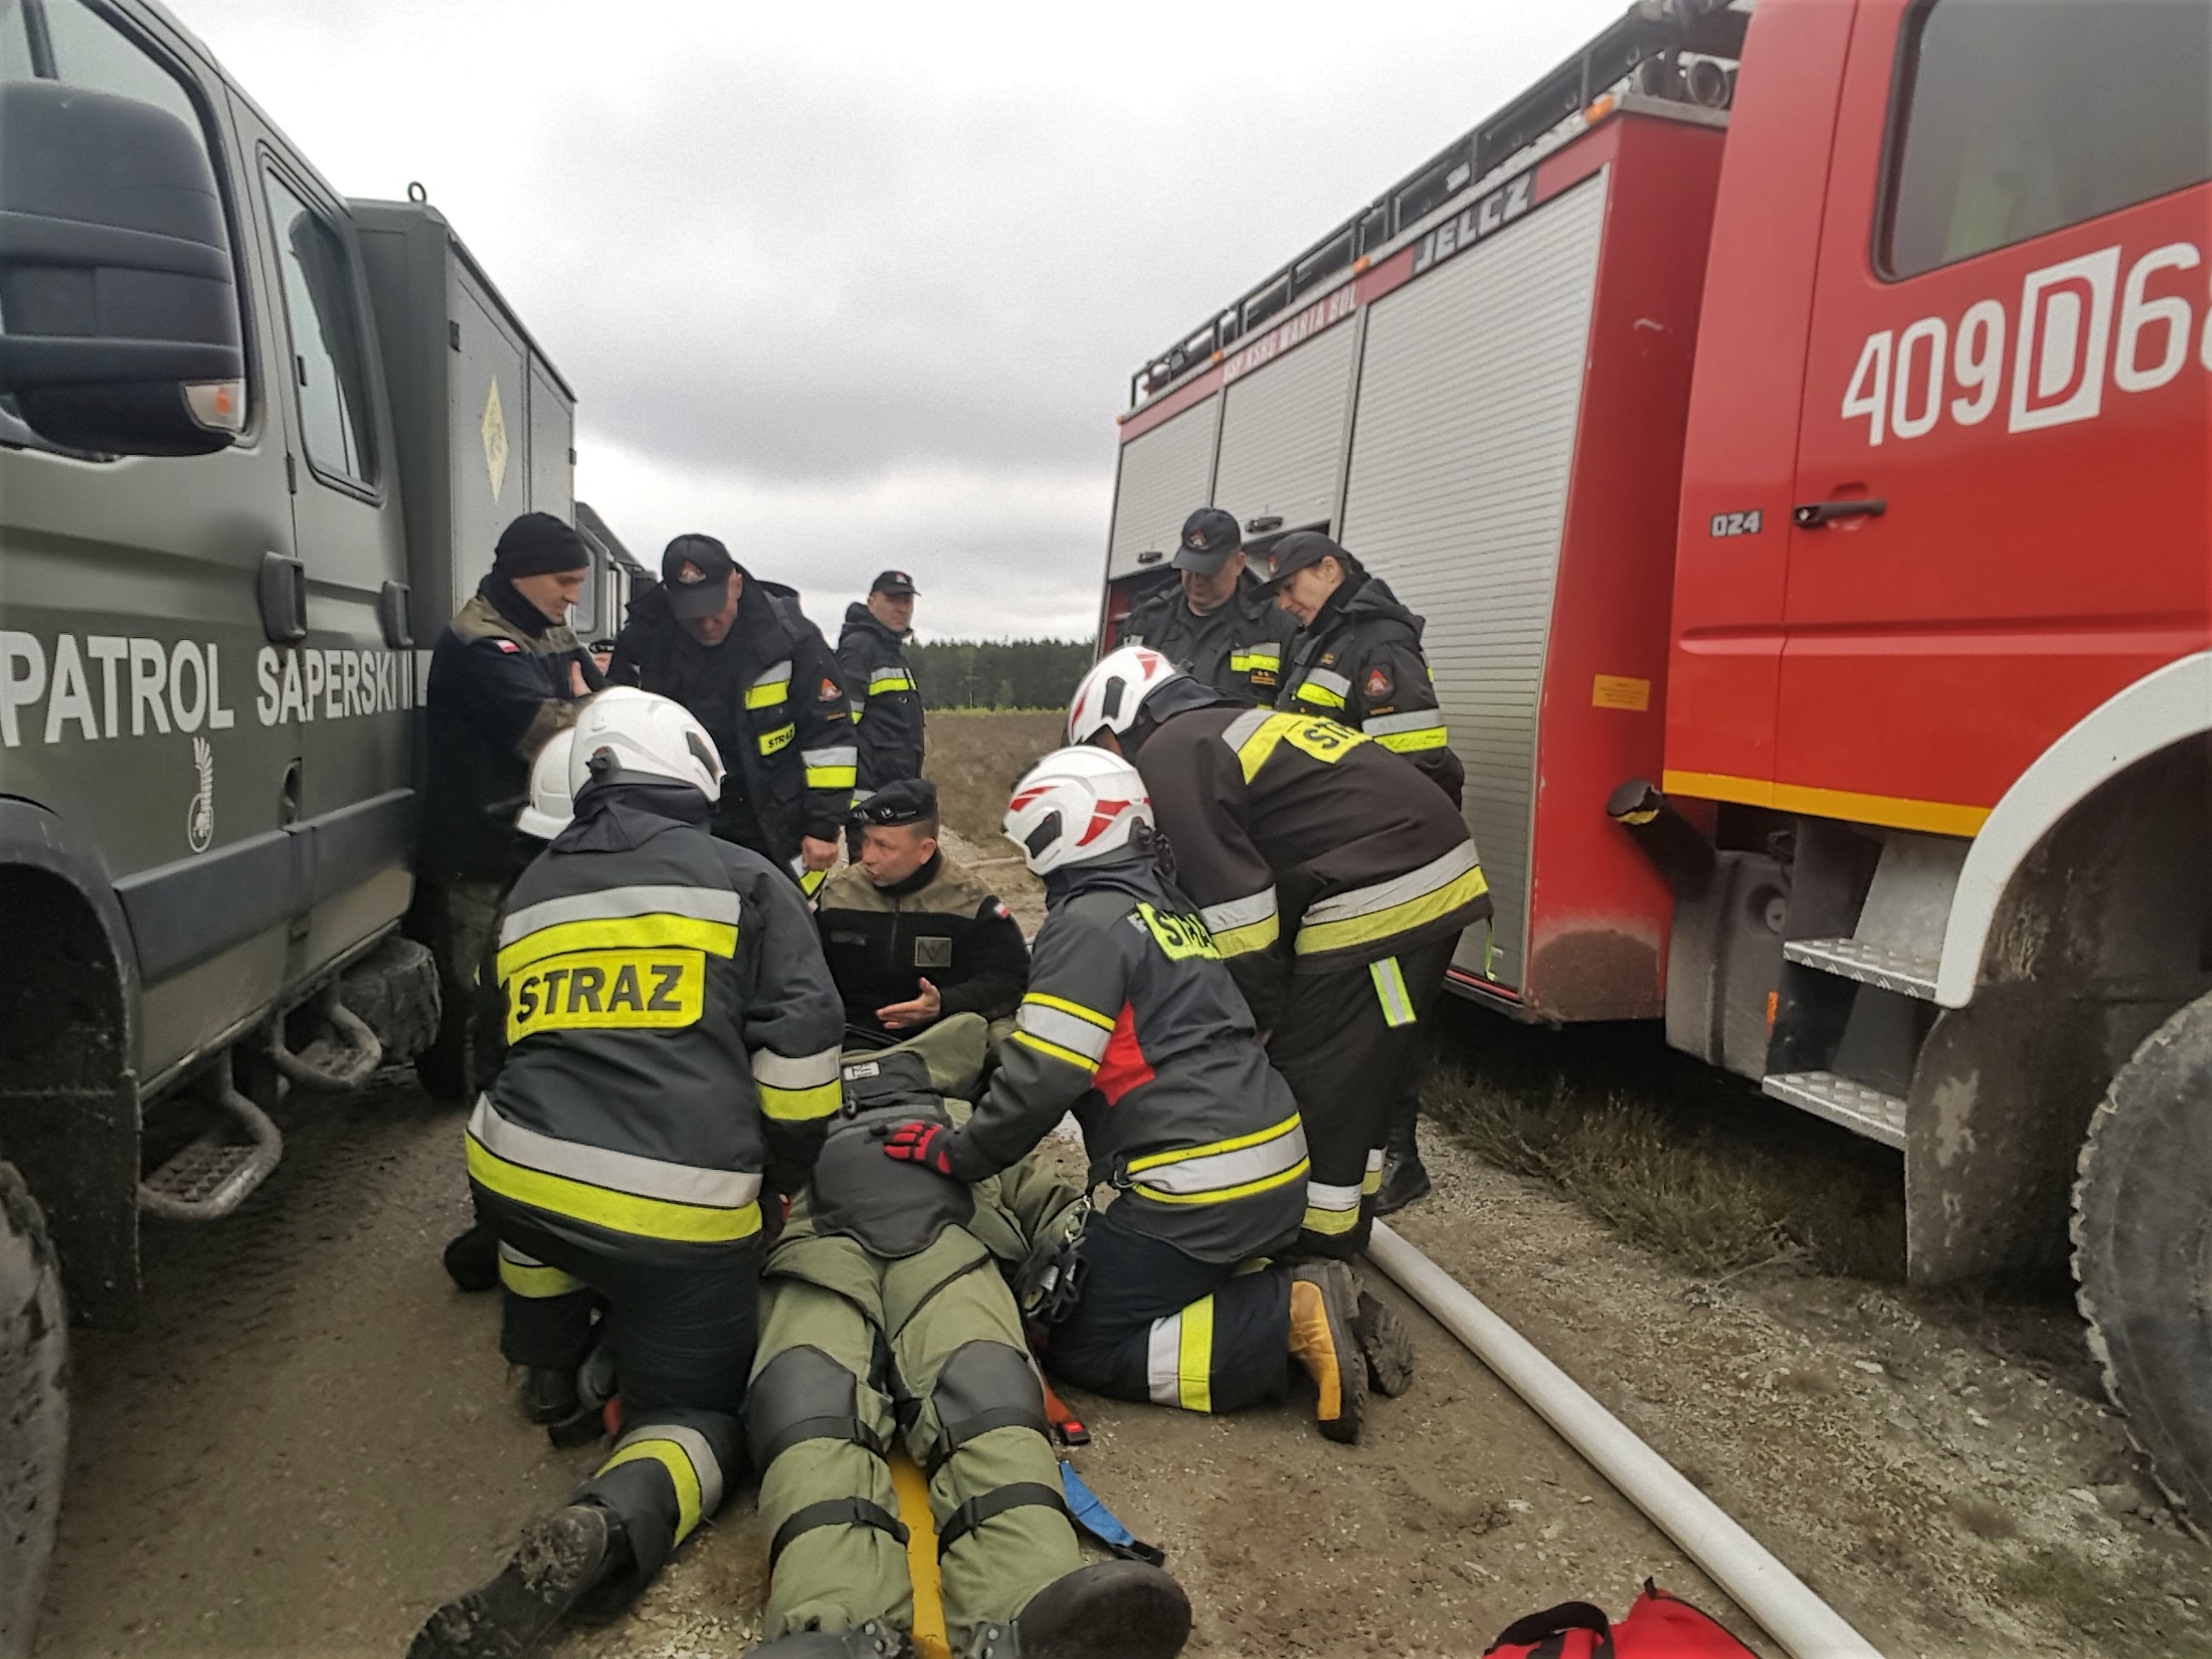 Strażacy udzielający pomocy rannemu saperowi / fot. Janusz Wilk